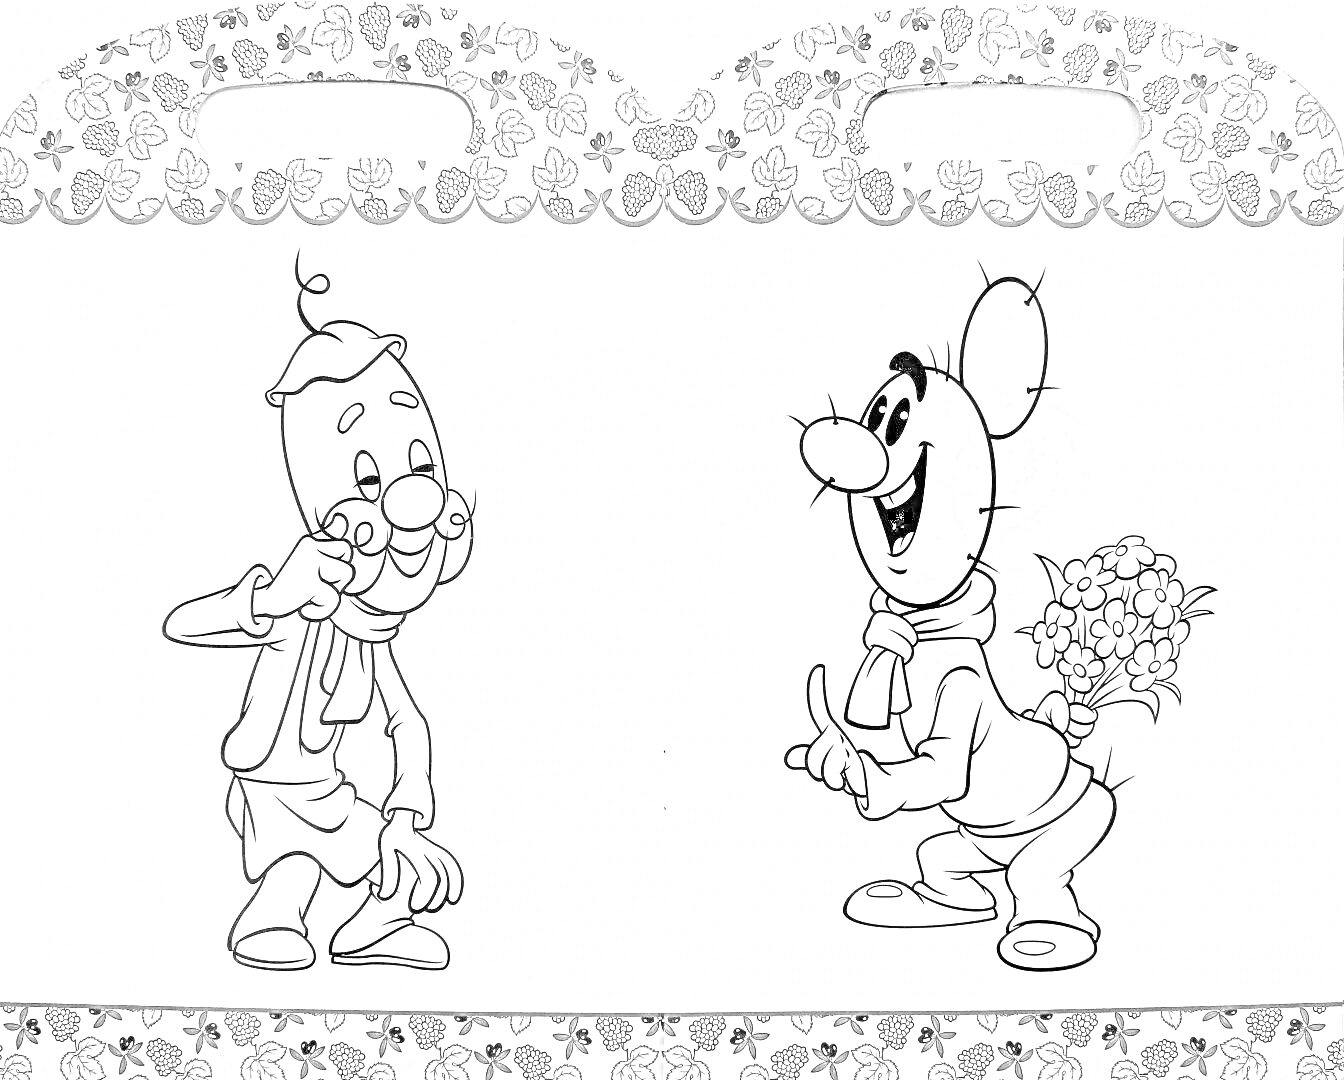 Раскраска Два персонажа из истории Чиполлино, один из них держит глаза, другой прячет букет за спиной